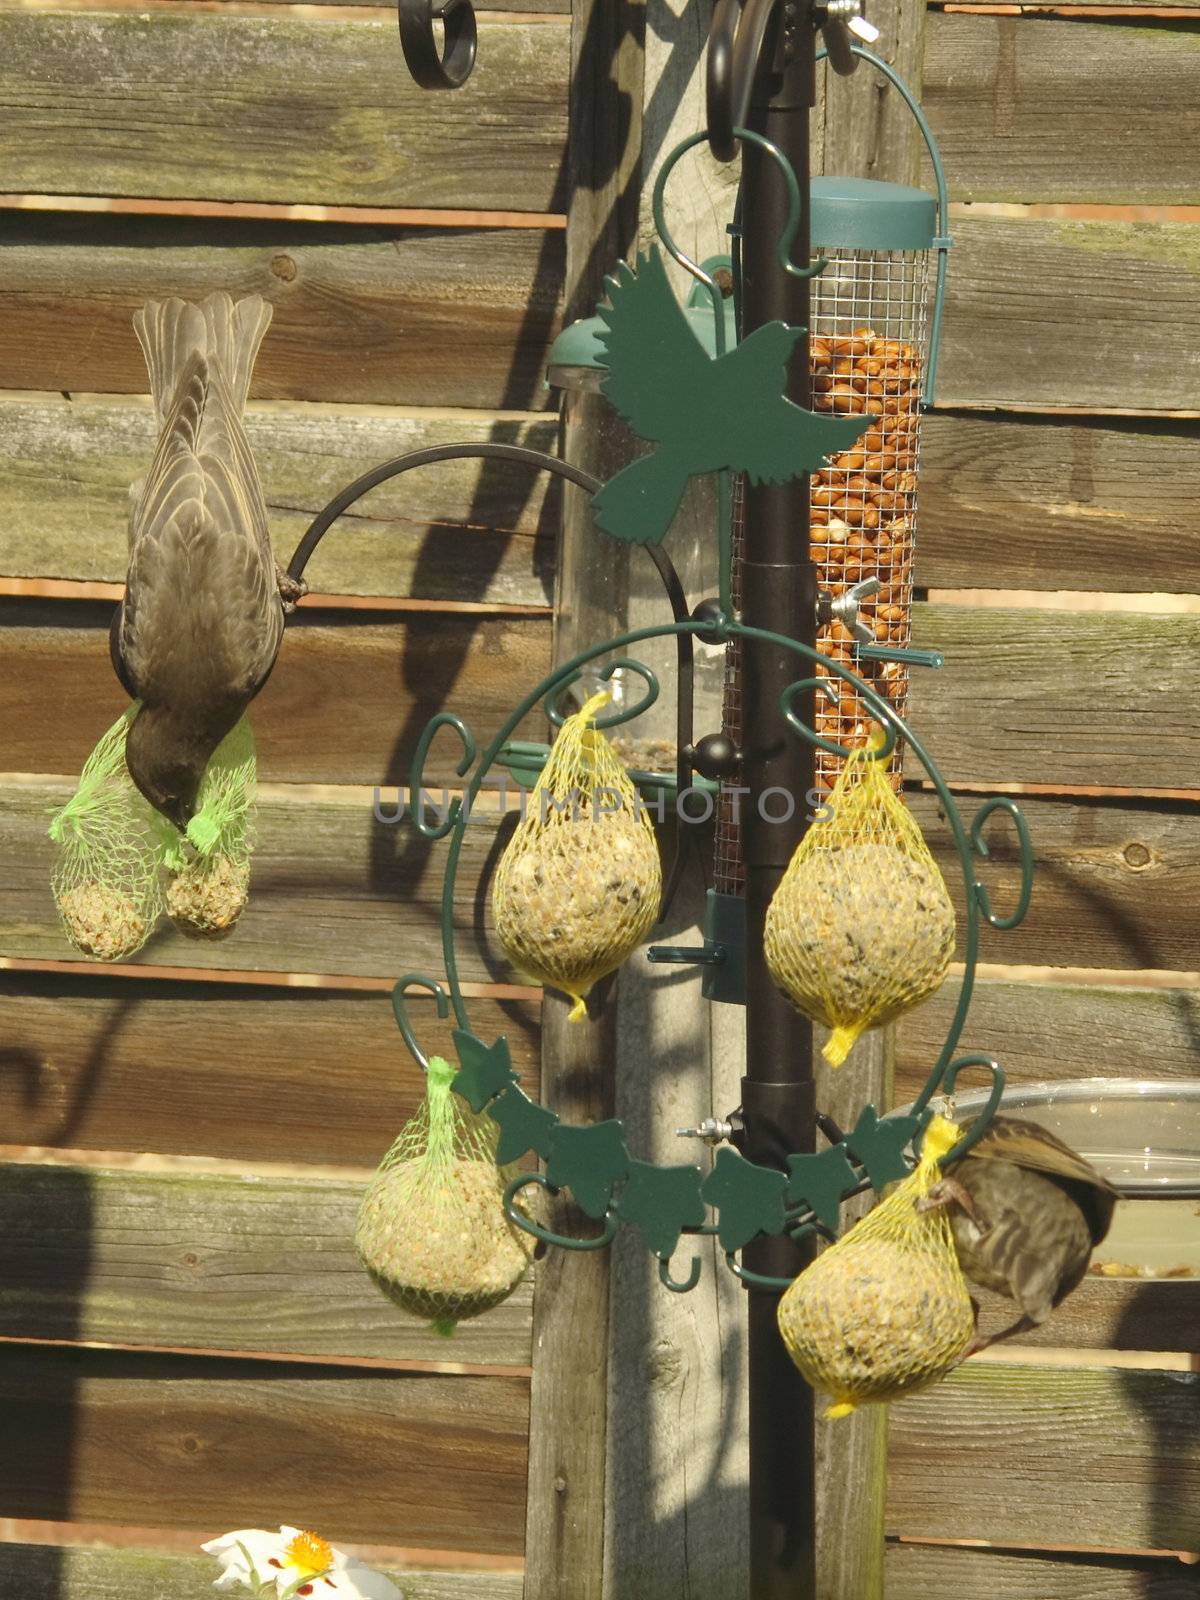 starling feeding on fat balls by leafy